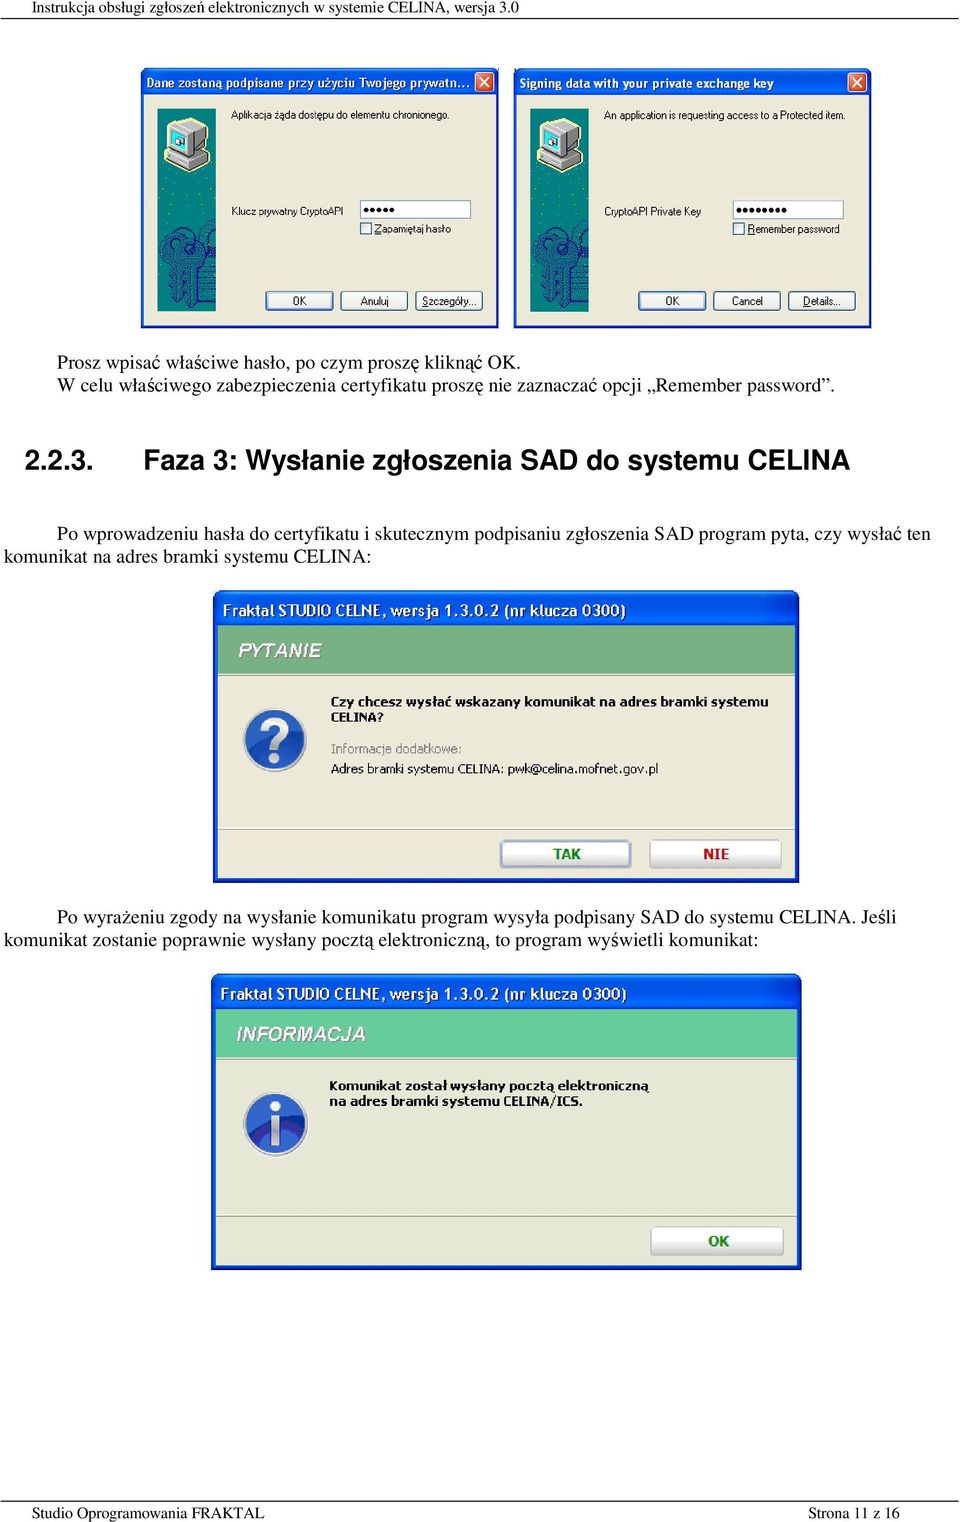 Faza 3: Wysłanie zgłoszenia SAD do systemu CELINA Po wprowadzeniu hasła do certyfikatu i skutecznym podpisaniu zgłoszenia SAD program pyta, czy